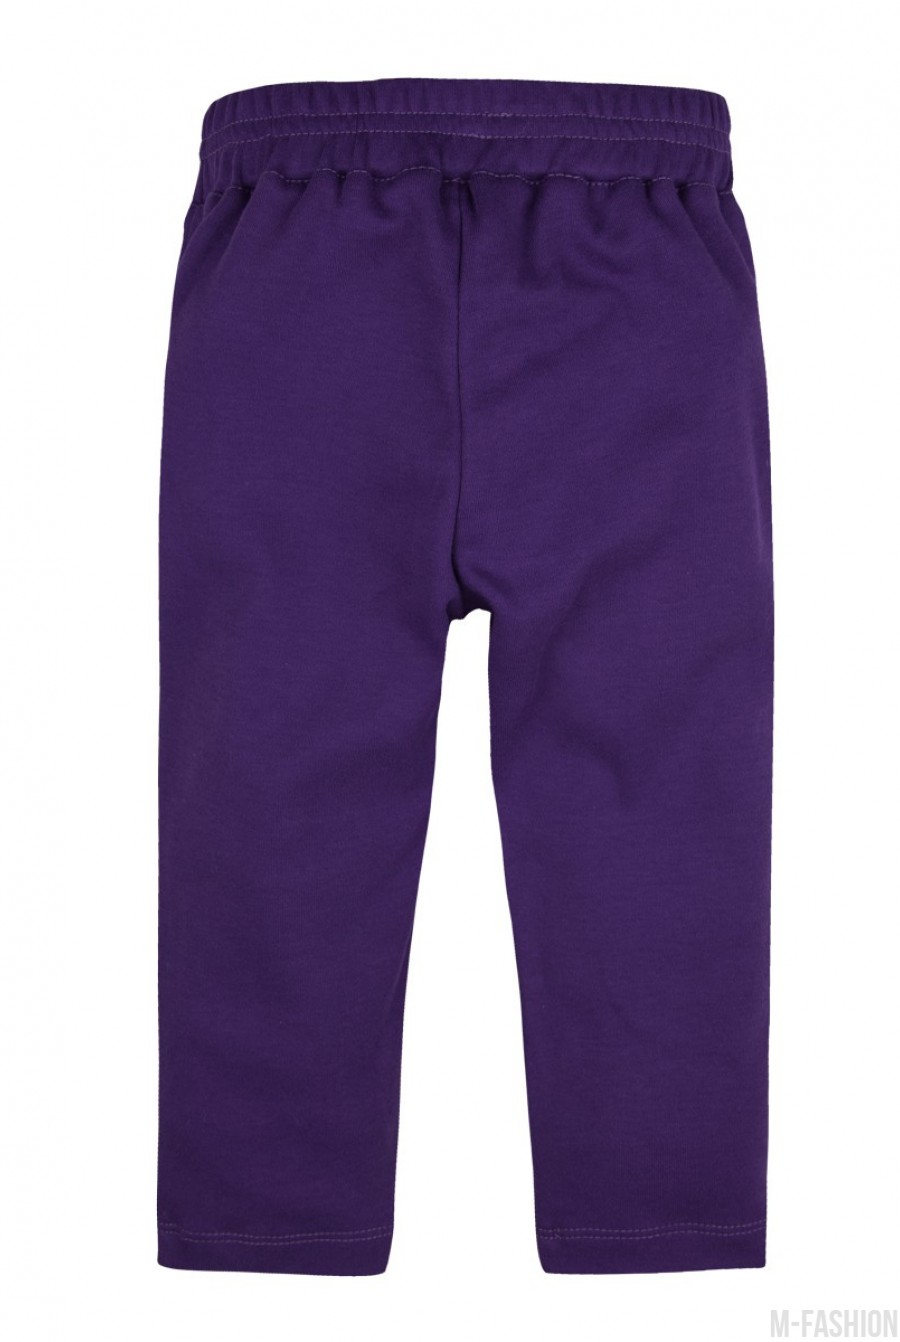 Фиолетовые трикотажные штаны на резинке- Фото 4